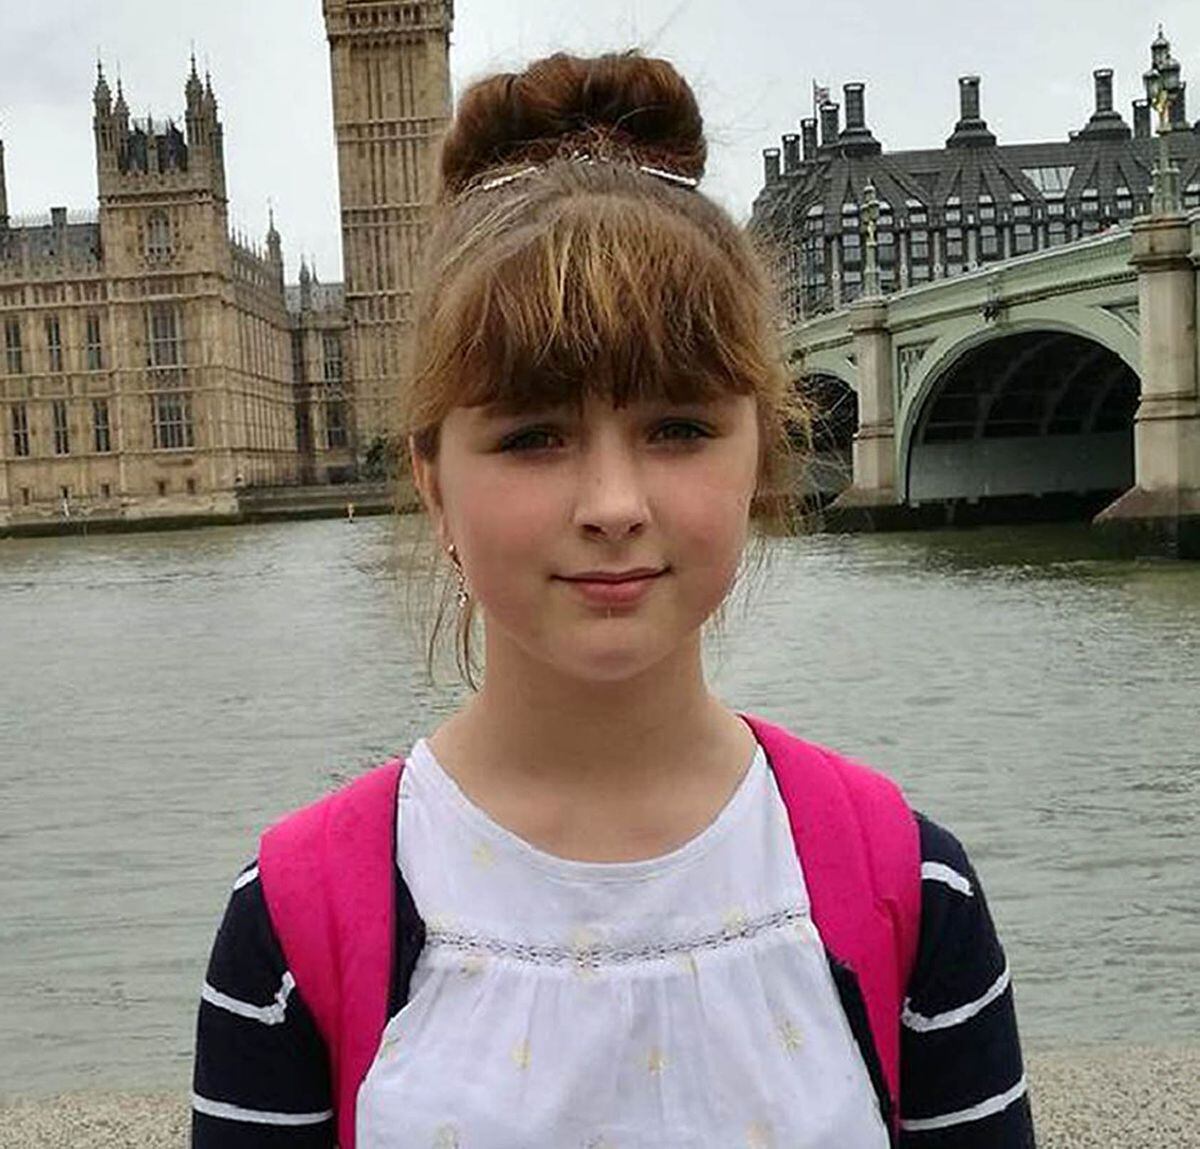 Viktorija was aged 14 when she was killed by Aziz